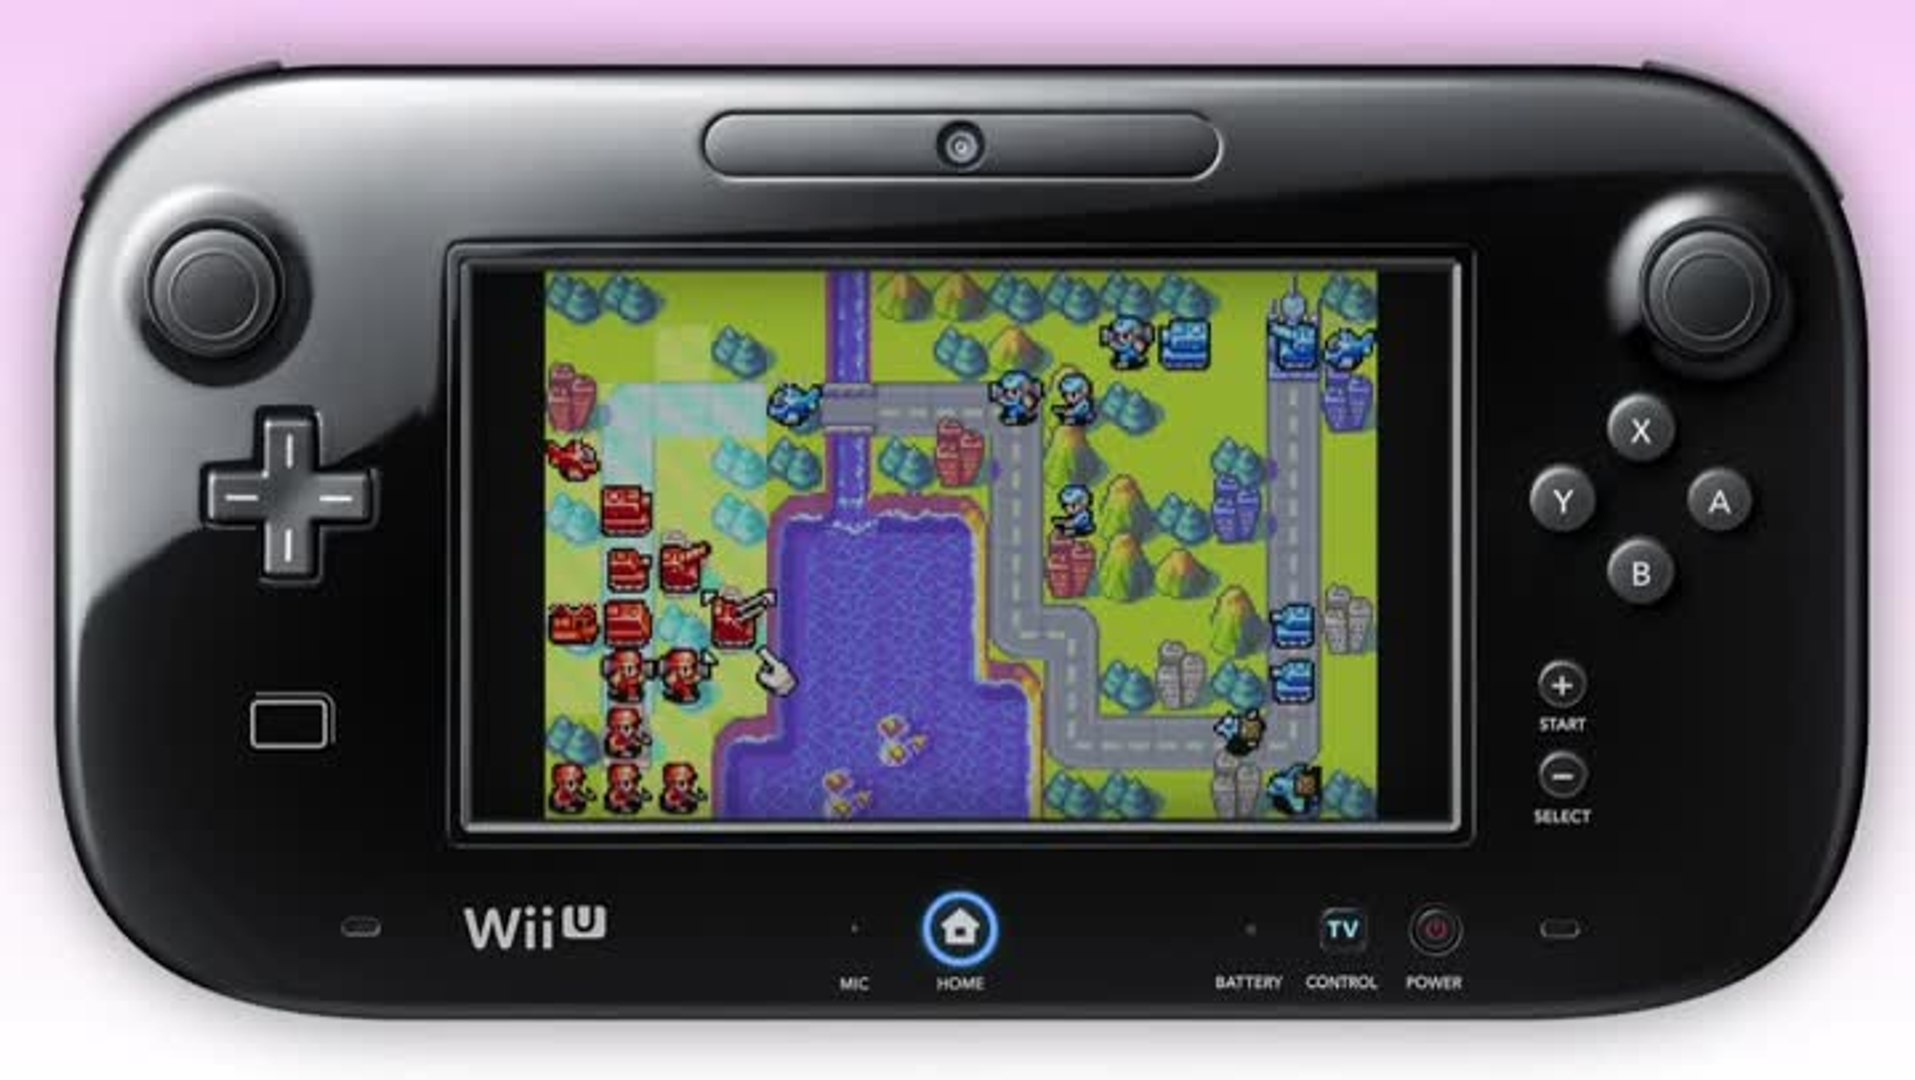 Les jeux GBA sur la console virtuelle Wii U (Avril 2014) - Vidéo Dailymotion